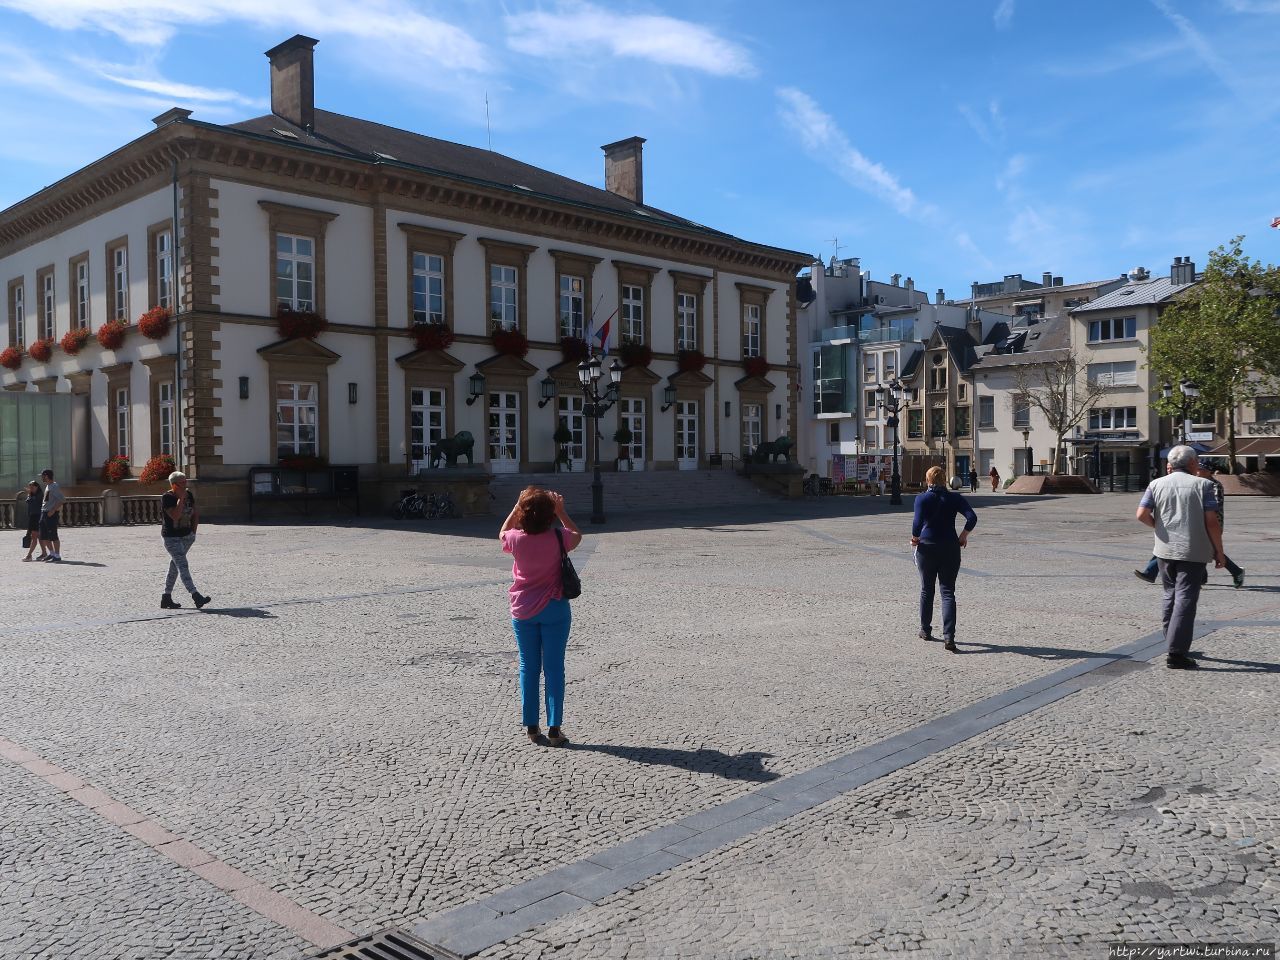 На площади Гийома II находится памятник (на текущий момент вокруг памятника осуществляется ремонт), осматриваем другие достопримечательности: на фотографии ратуша. Люксембург, Люксембург